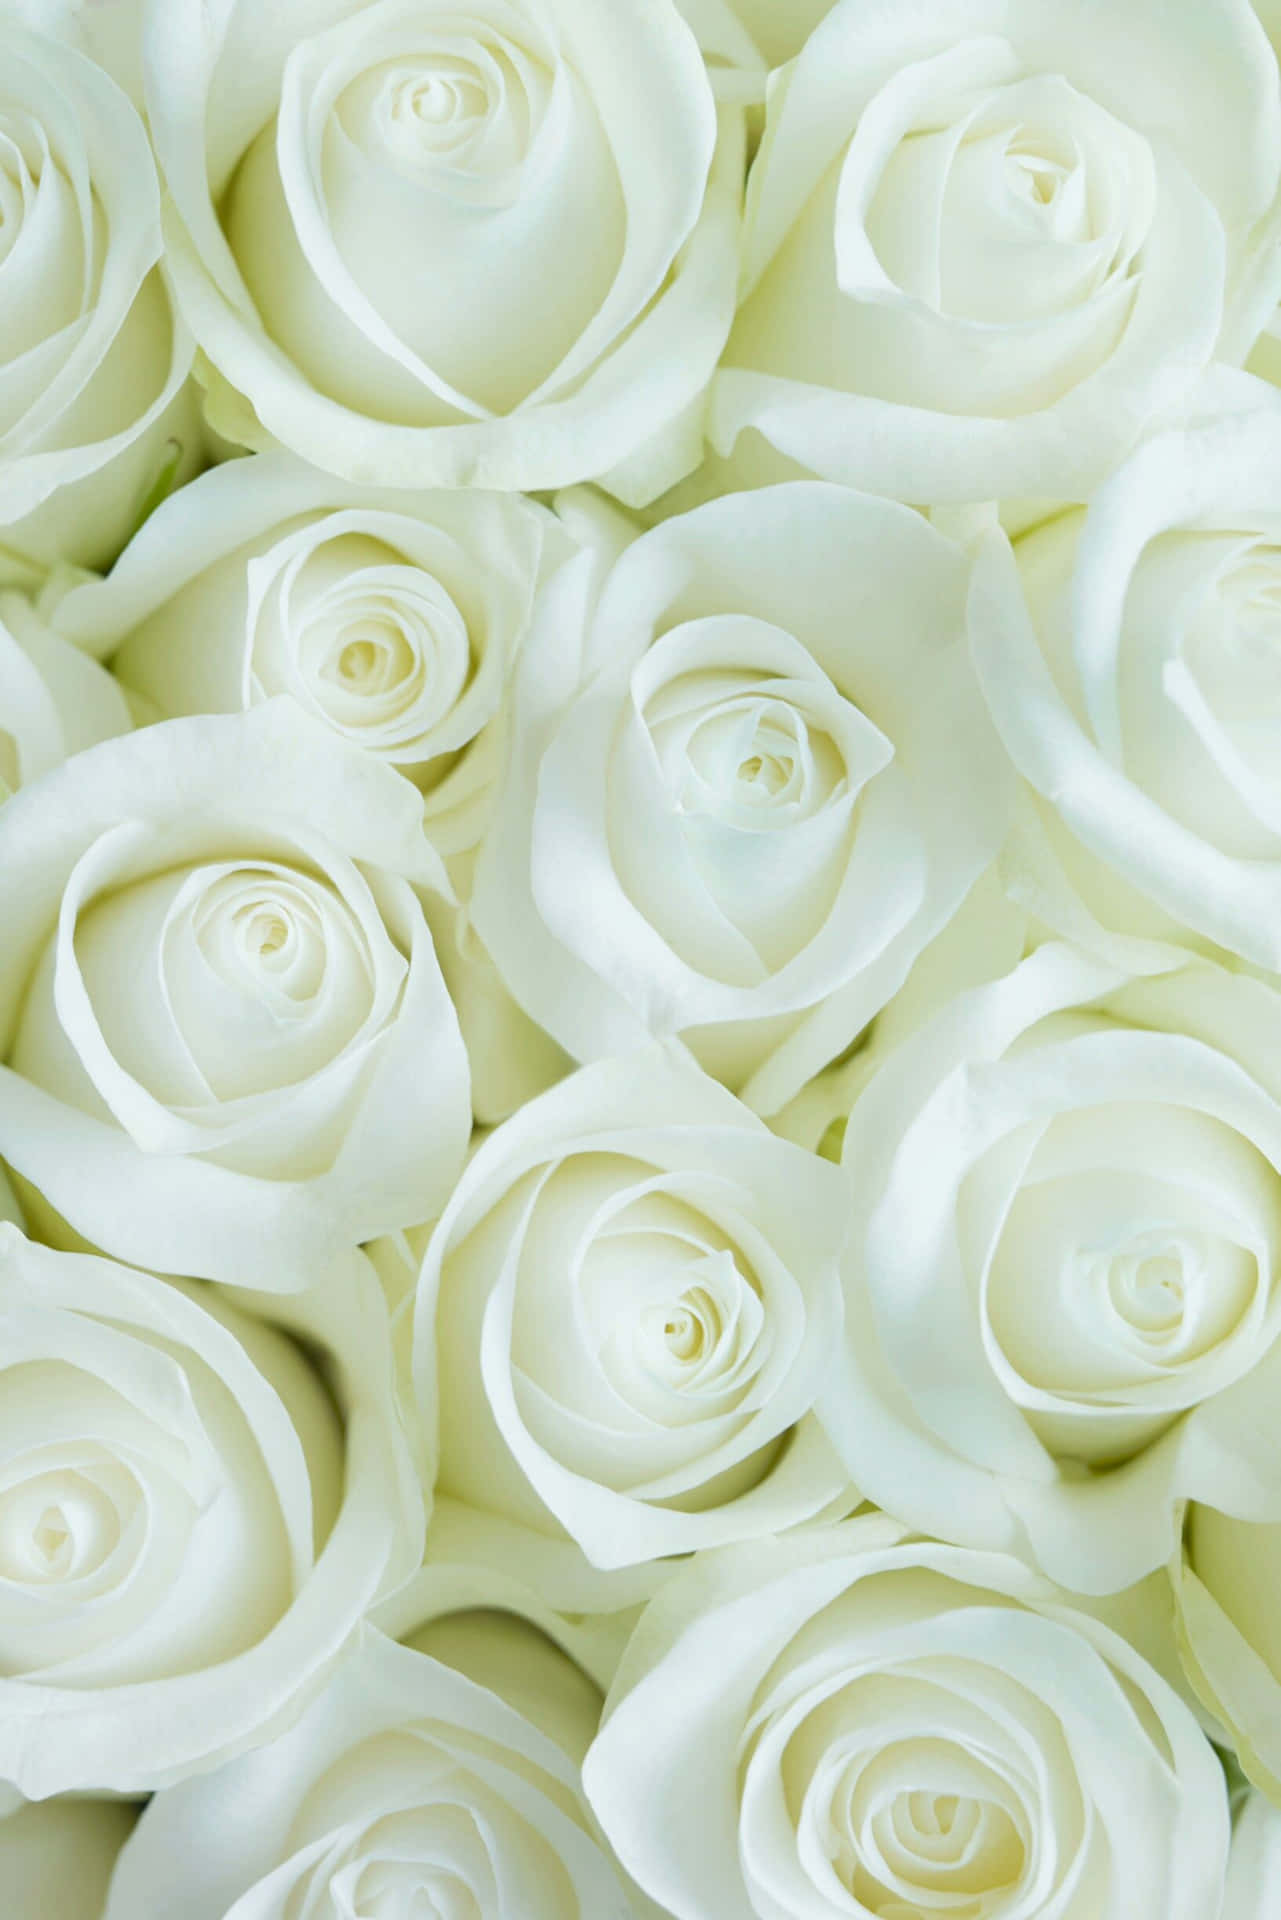 Eineeinzelne Weiße Rose Blüht Zwischen Dem Grün Wallpaper